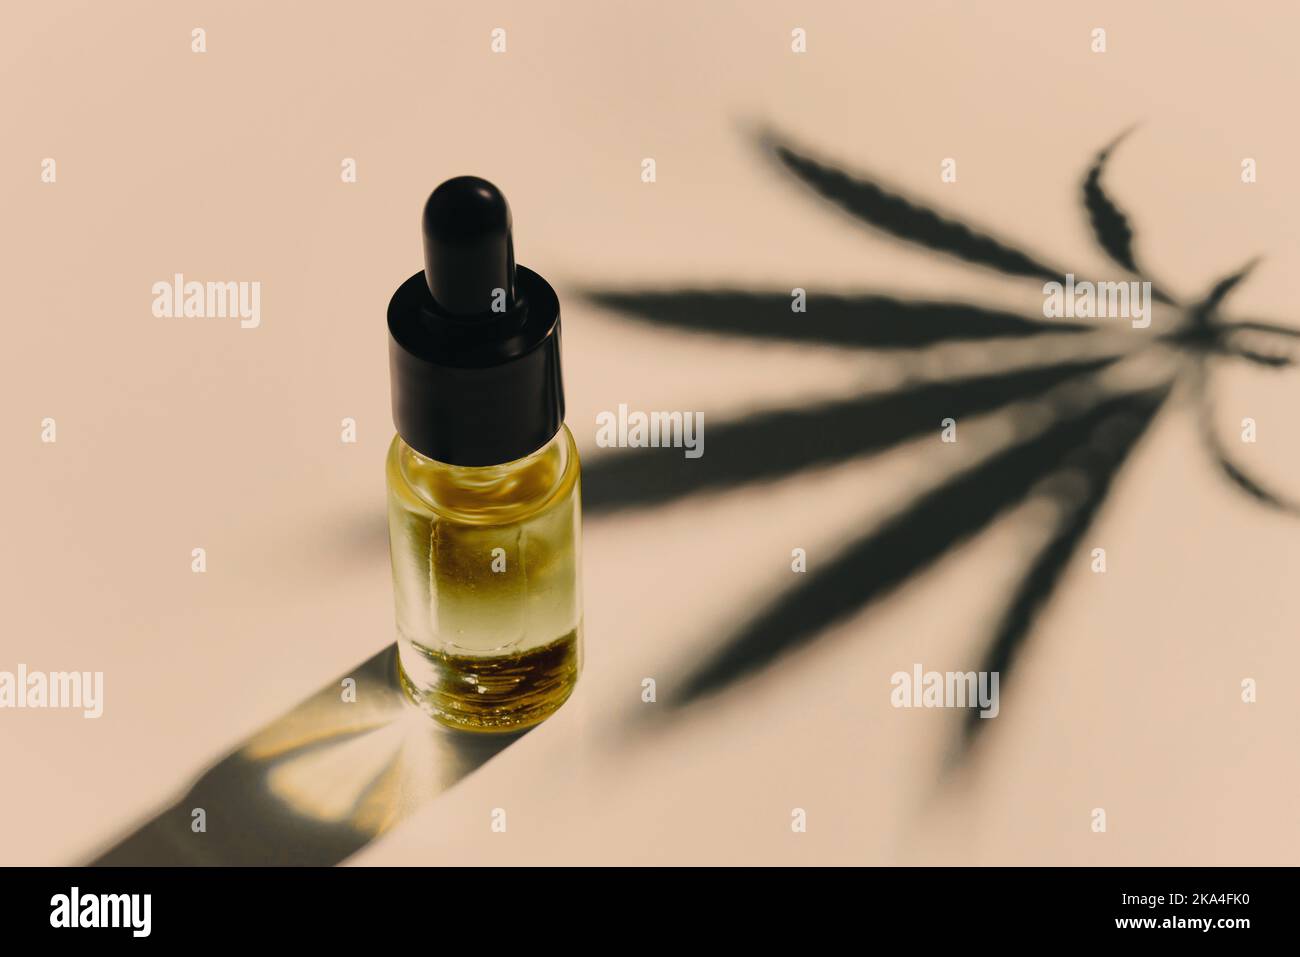 Feuille de chanvre sativa au cannabis avec contenant d'huile de CBD et couvercle compte-gouttes sur fond blanc. Concept de marihuana légalisée. Banque D'Images